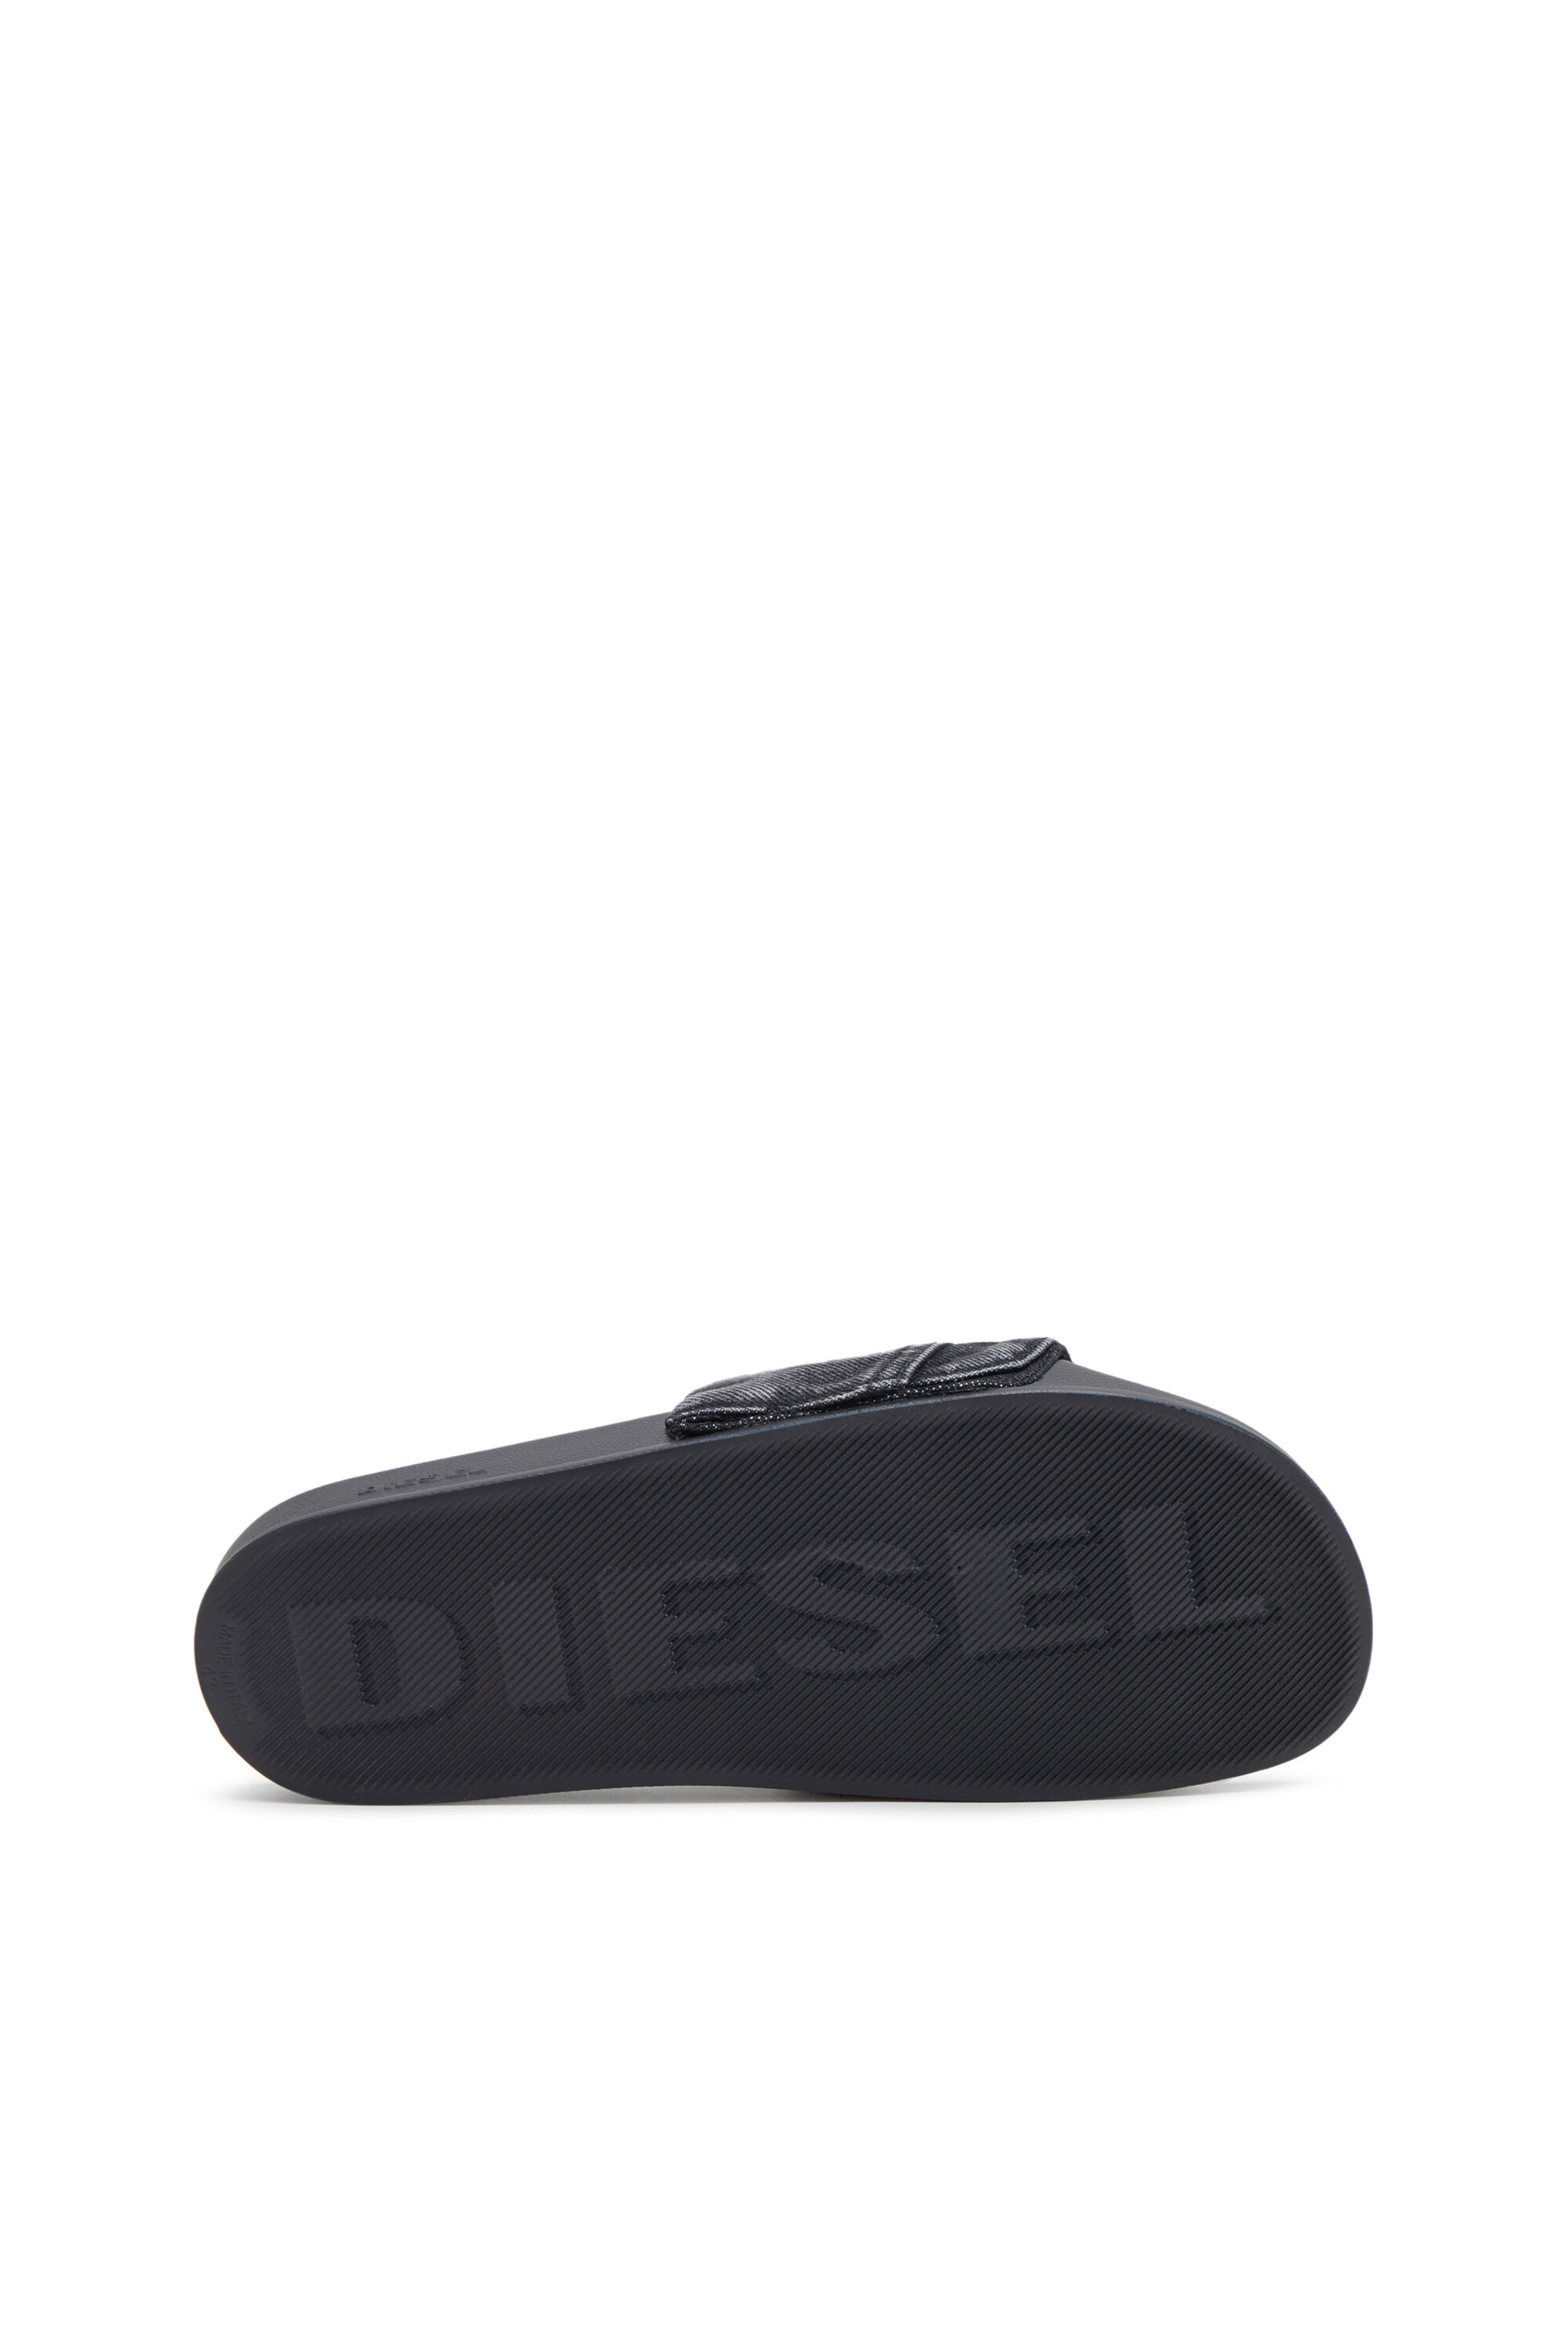 Diesel - SA-MAYEMI PK, Noir - Image 4